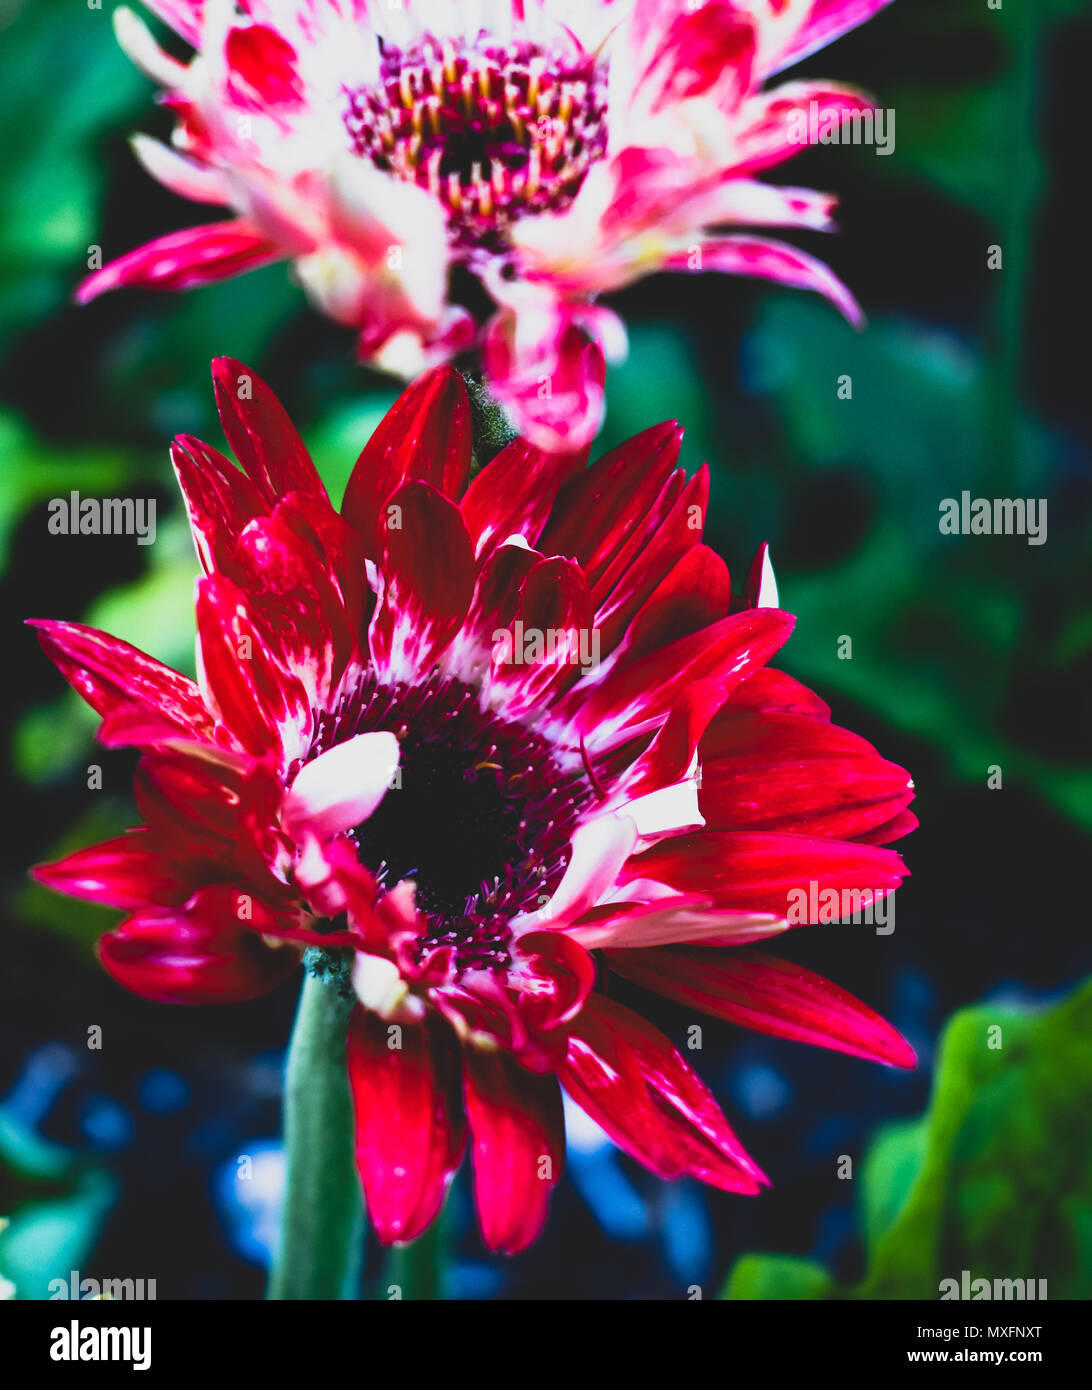 Hermosa mezcla de rosas, rojos, morados, blancos en diferentes tonos increíbles Foto de stock